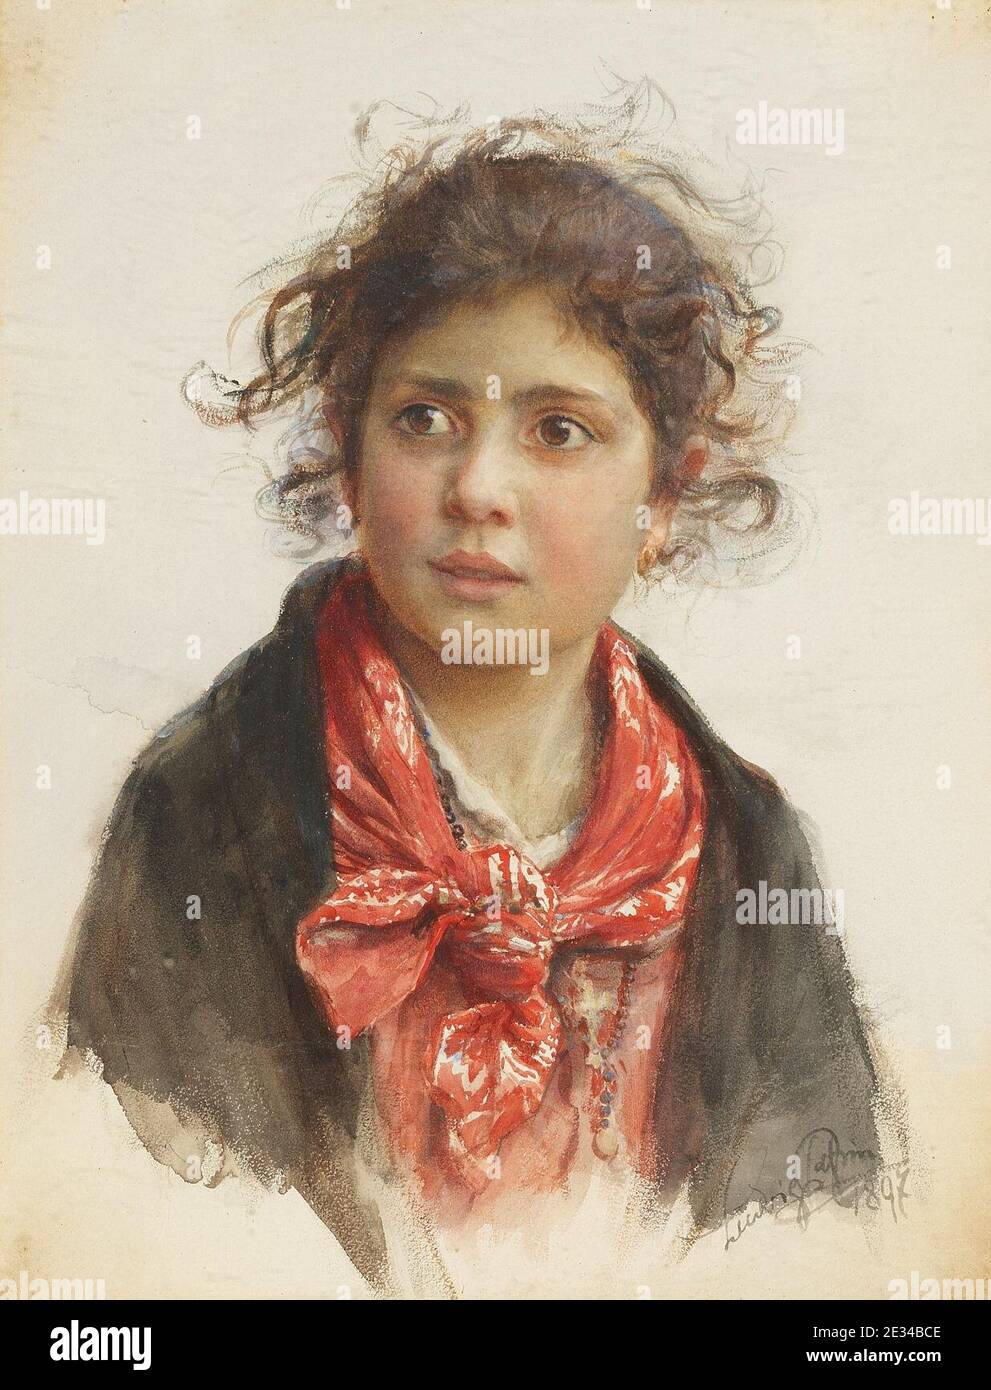 Ludwig Passini - Bildnis eines scheuen Mädchens mit rotem Halstuch und zerzausten Locken. Stock Photo